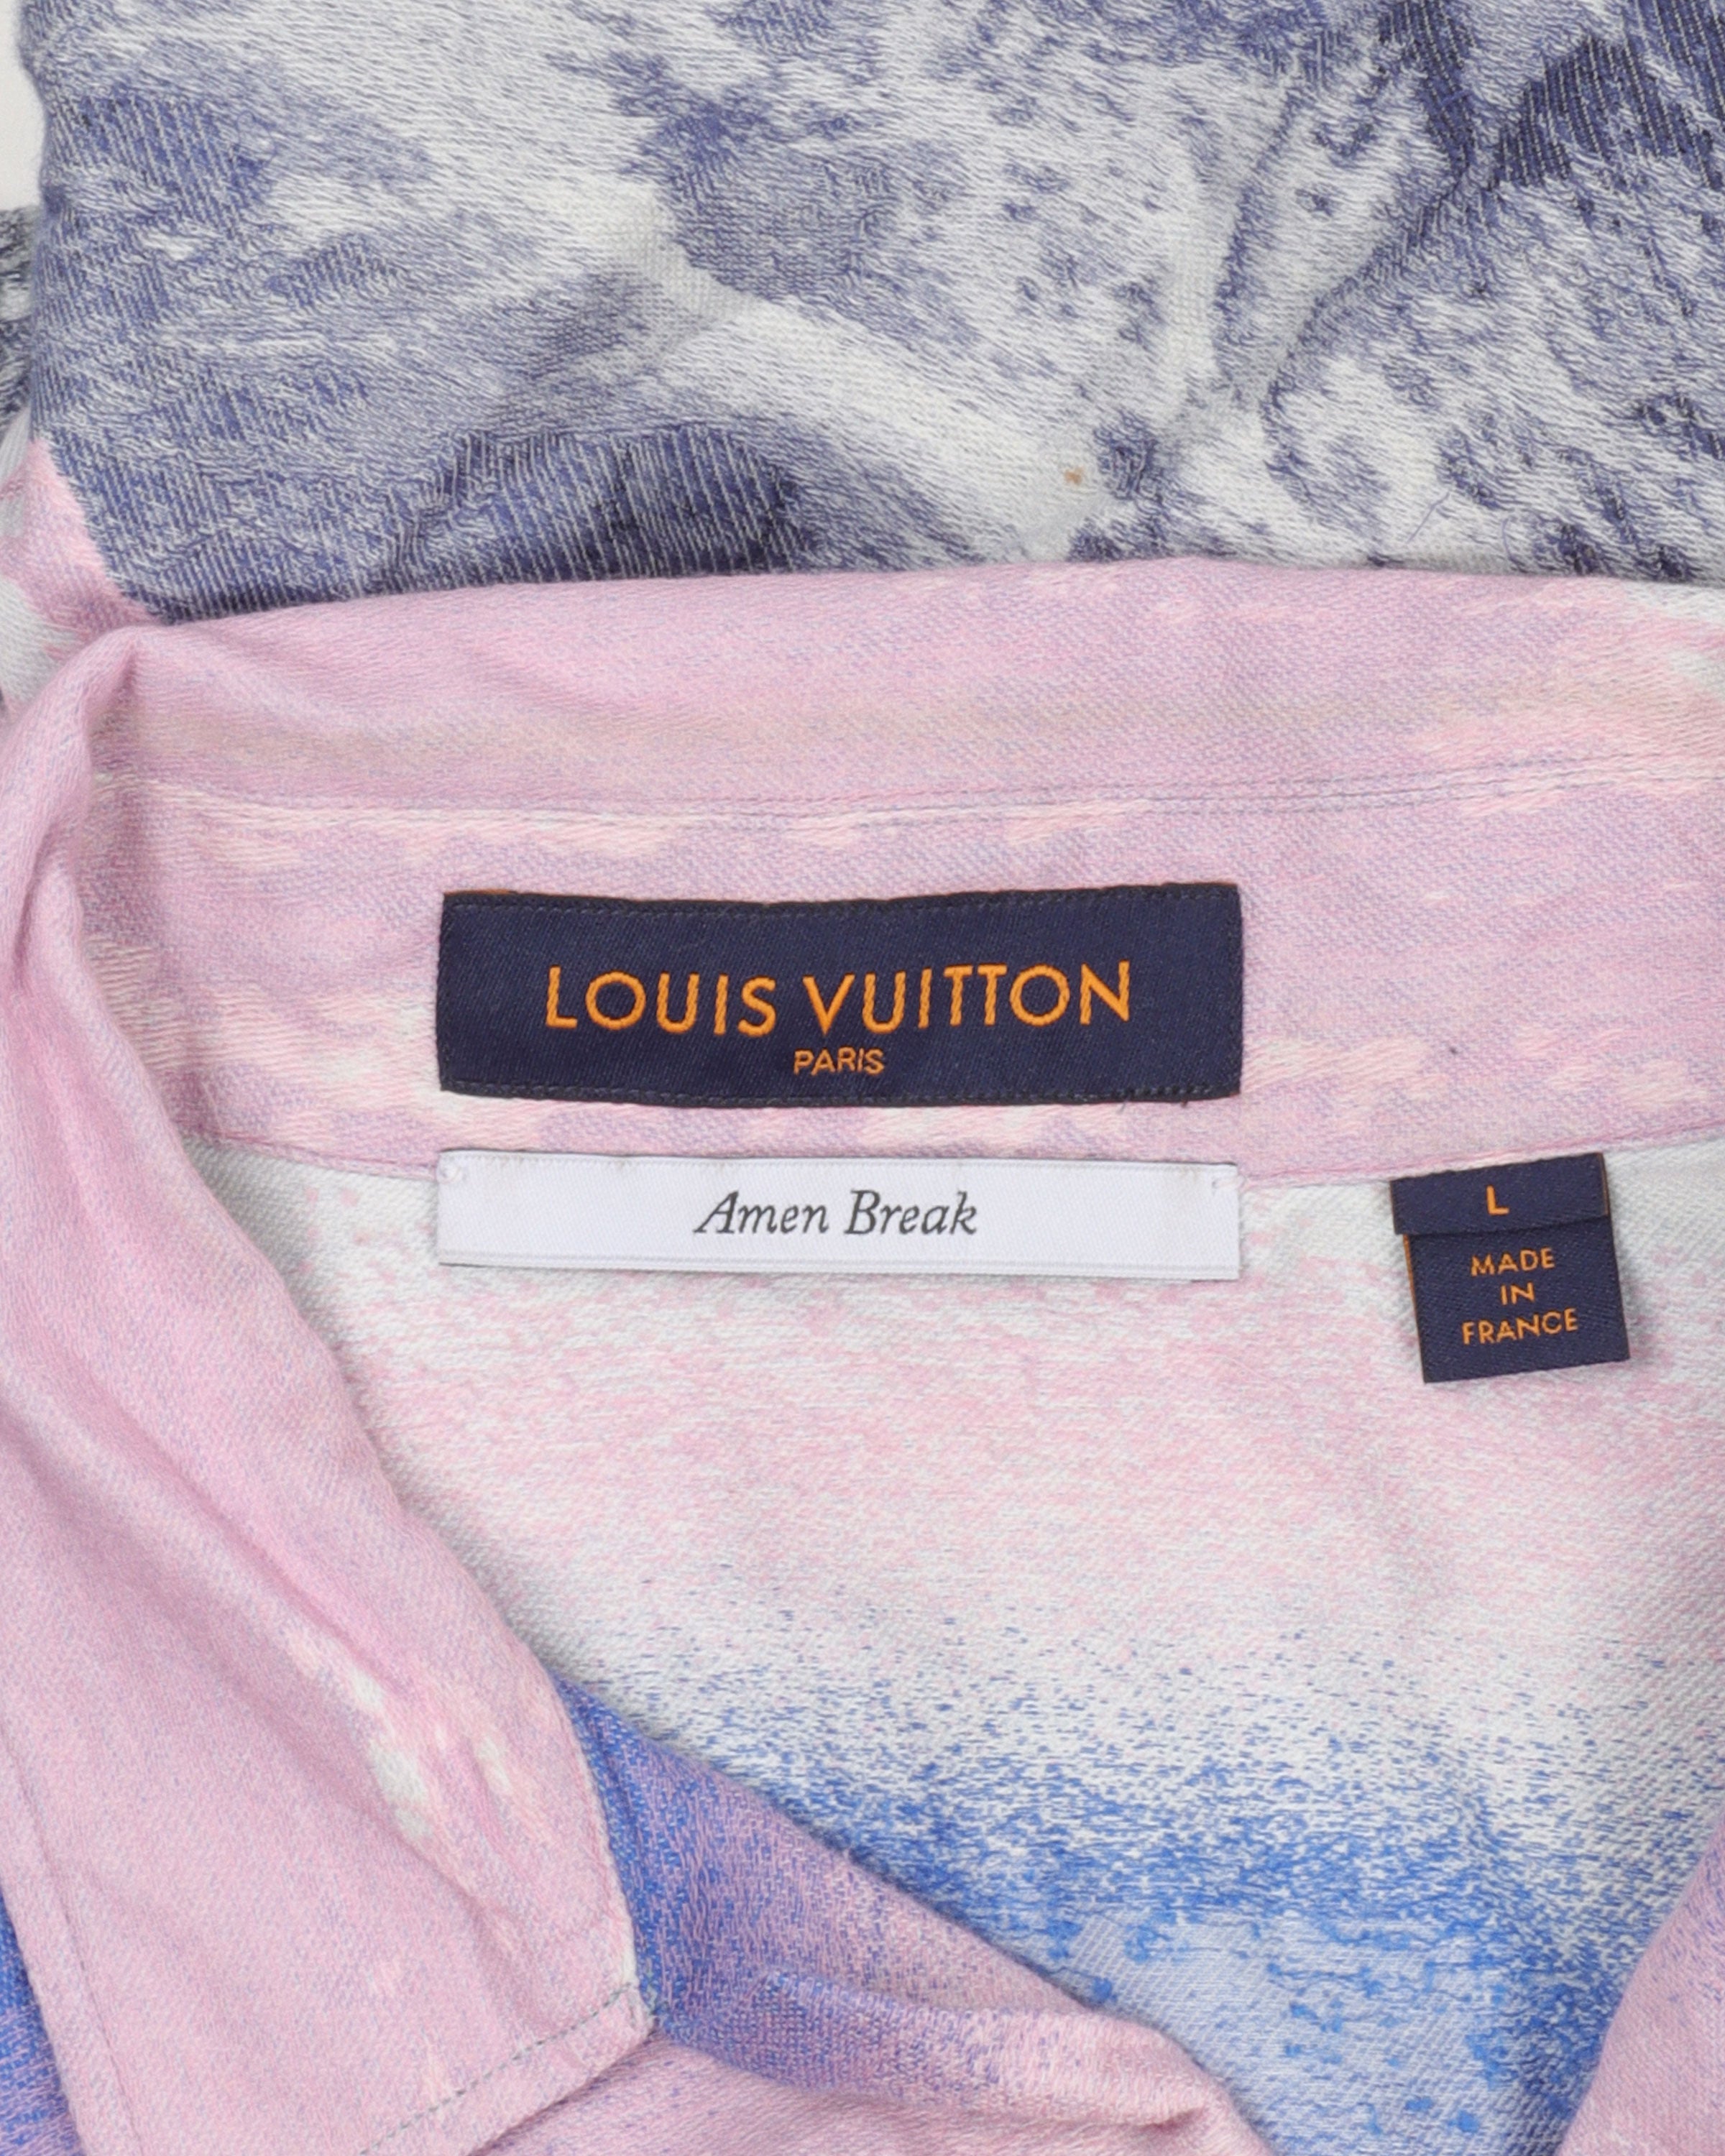 Louis Vuitton Amen Break